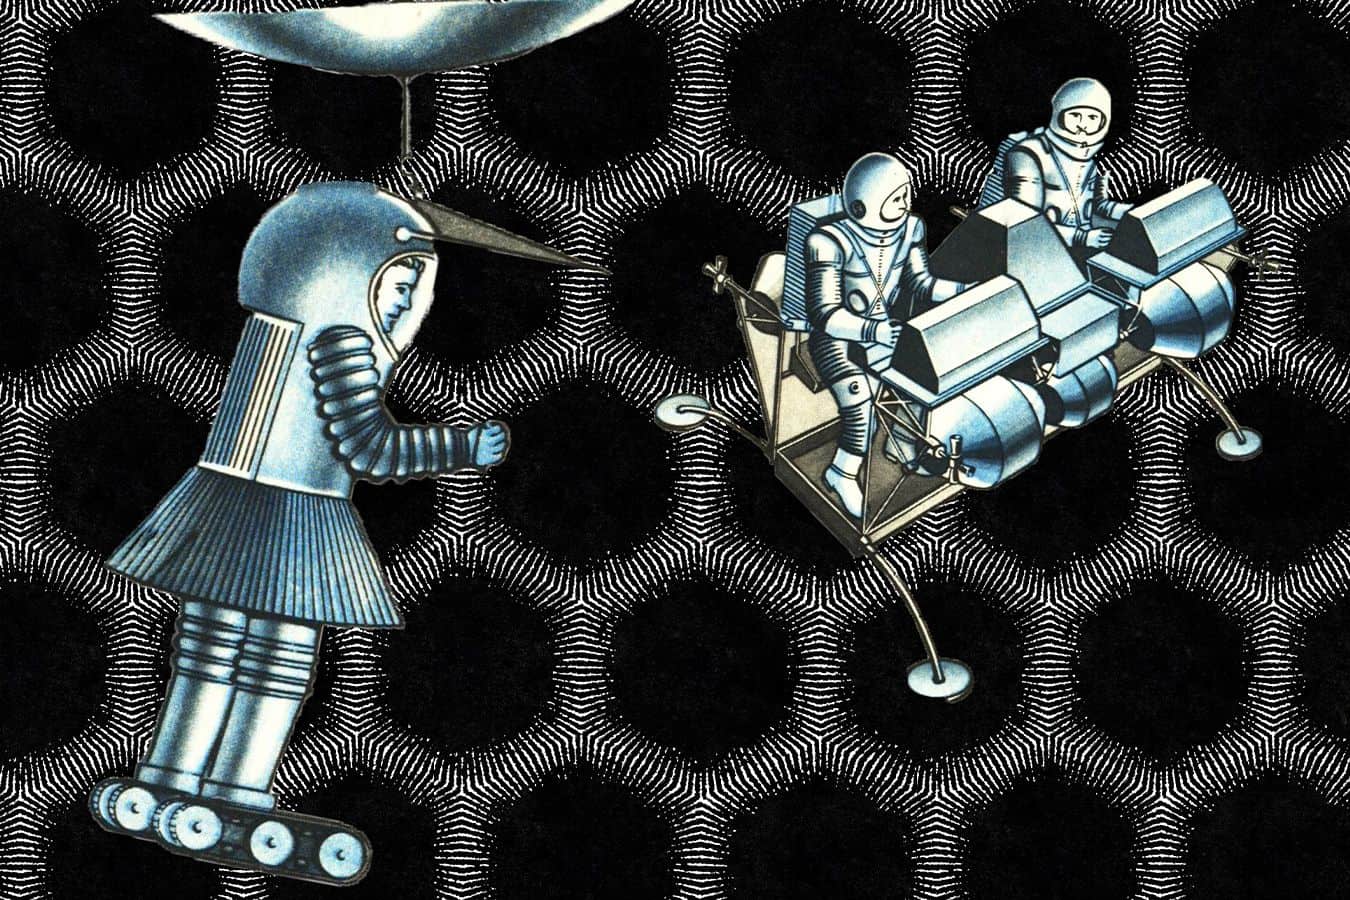 Astronauts in hexagonal space.